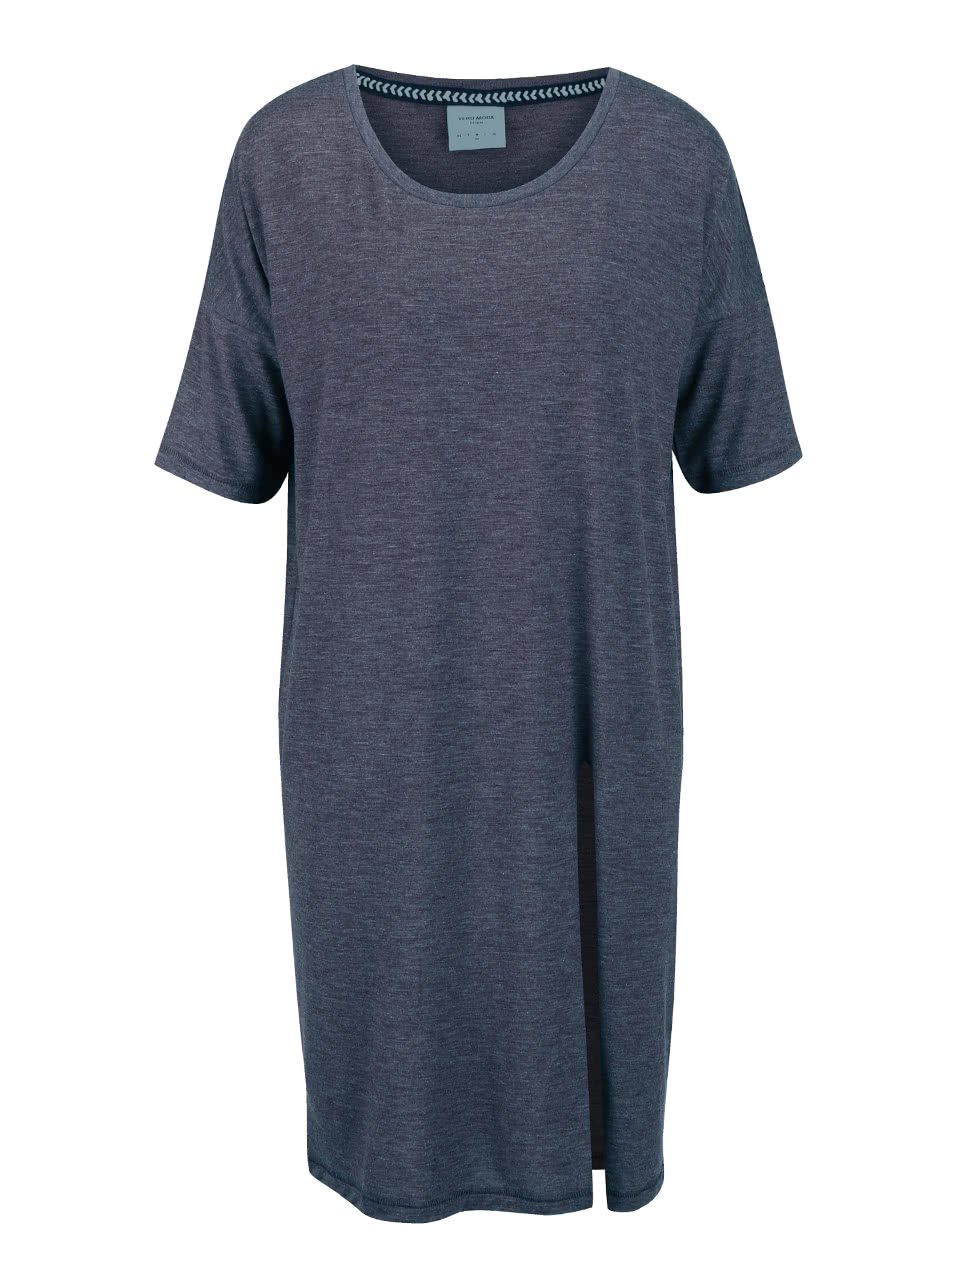 Modré žíhané volnější dlouhé tričko s rozparkem Vero Moda Ida